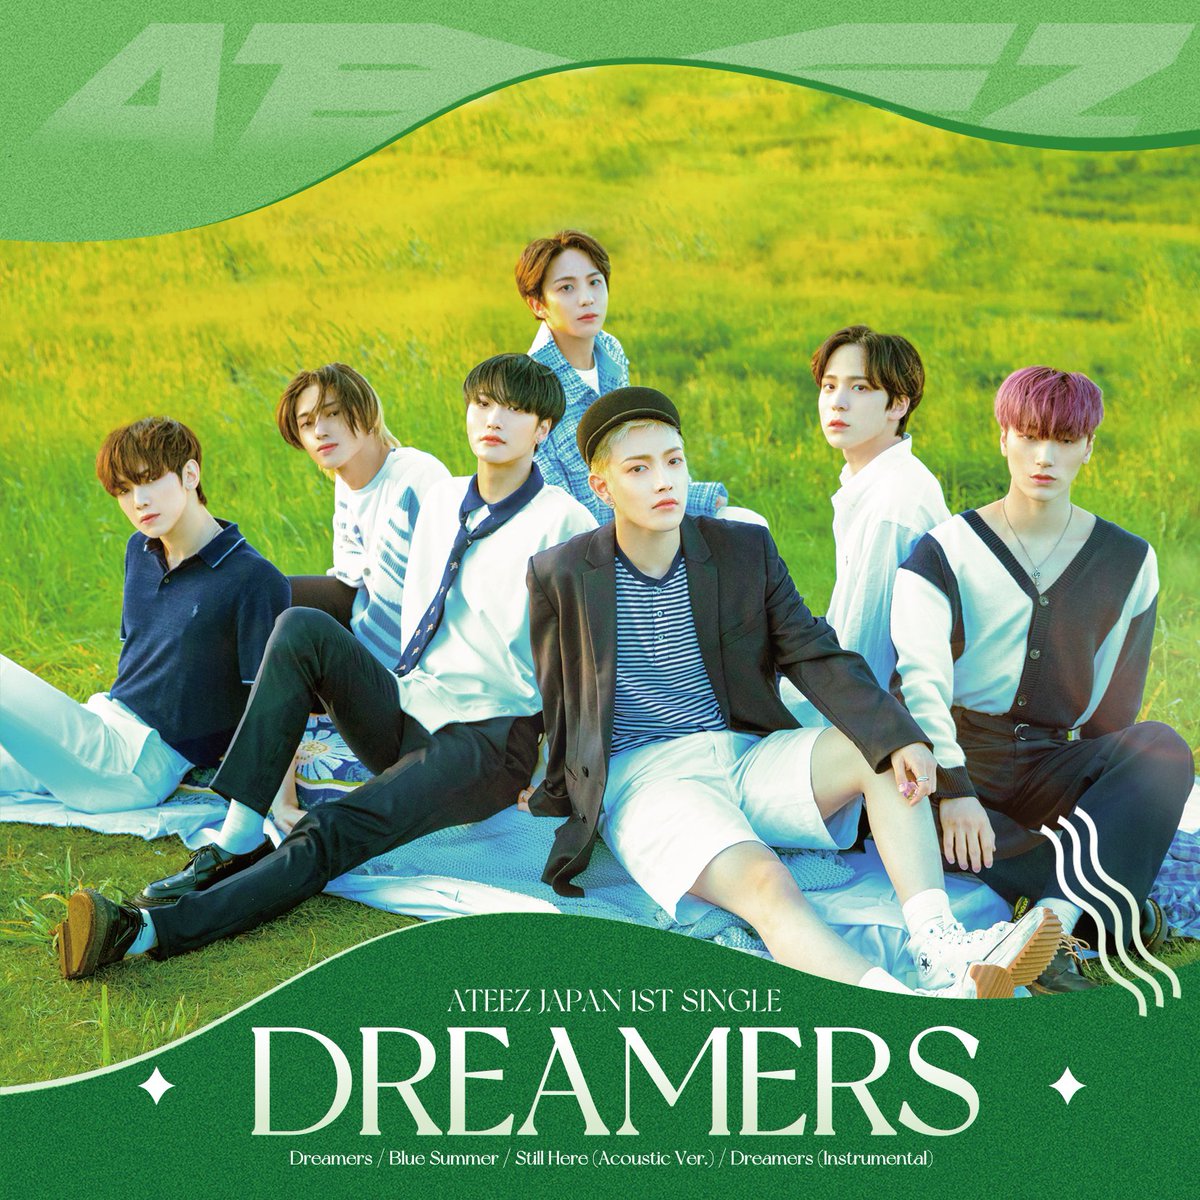 『ATEEZ - Dreamers 歌詞』収録の『Dreamers』ジャケット